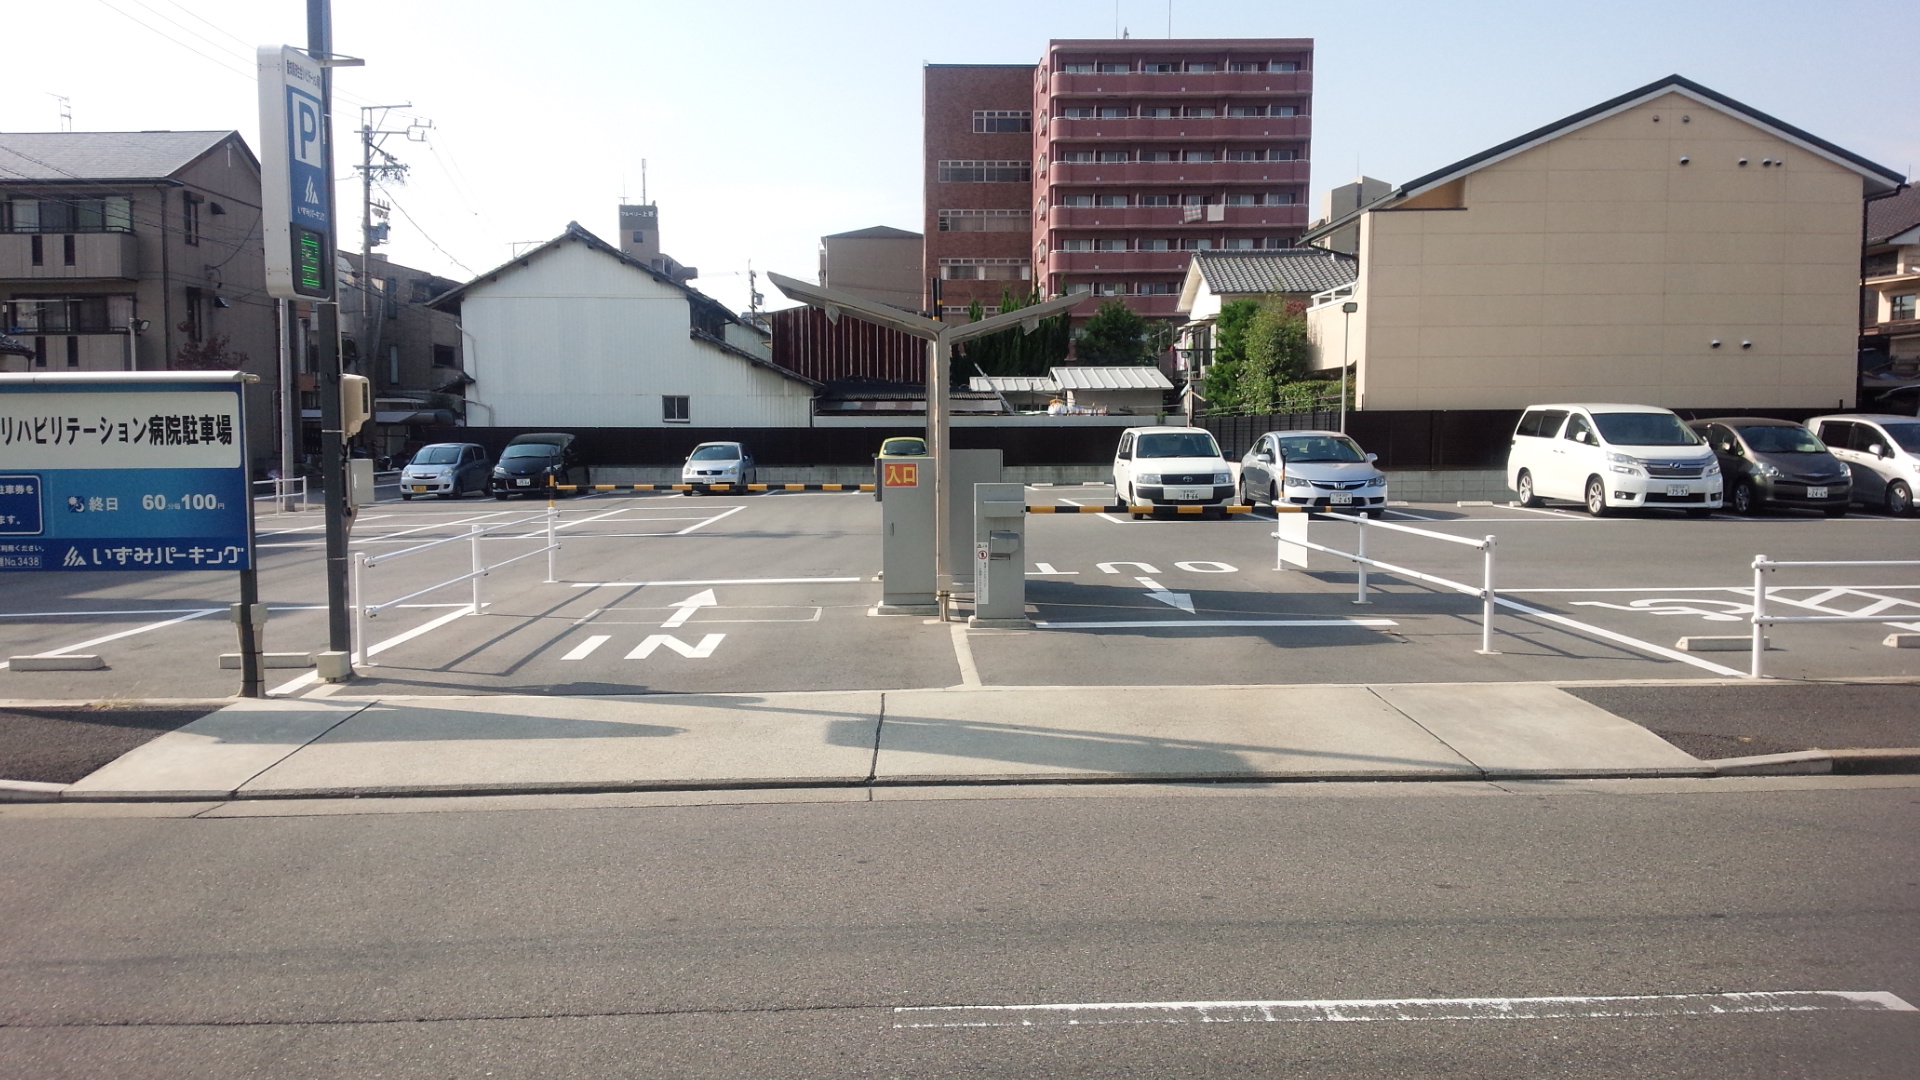 愛知県済生会リハビリテーション病院駐車場